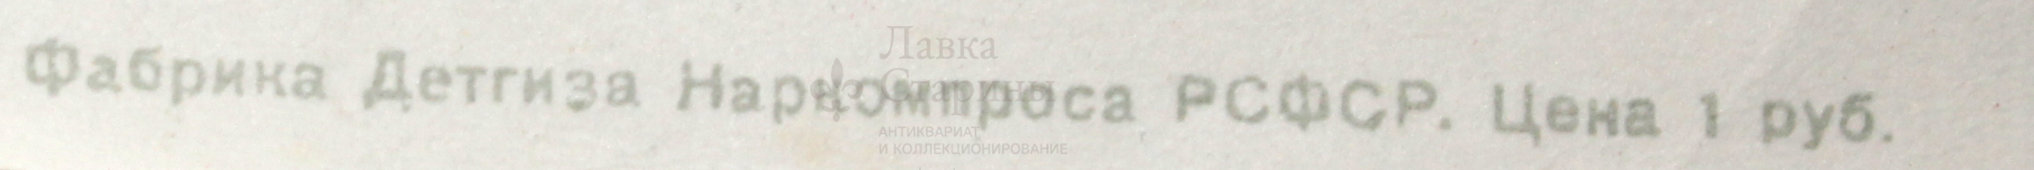 Советский агитационный плакат «Наше дело правое победа будет за нами», художник В. Серов, Москва, 1941 г., репринт 1970-е